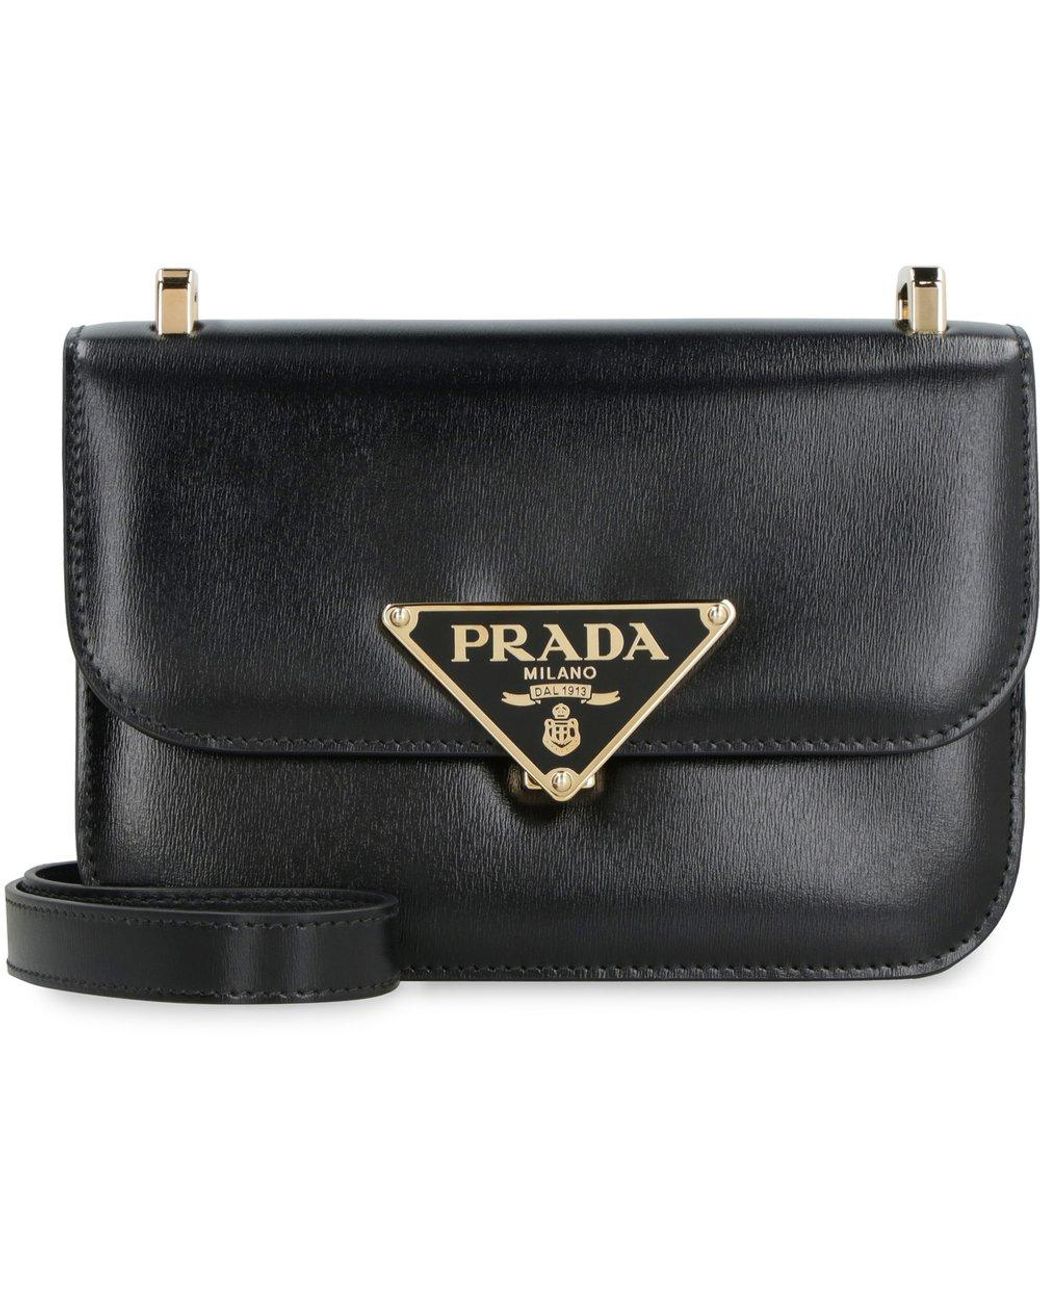 Prada Emblème Saffiano Press-stud Fastened Shoulder Bag in Black | Lyst